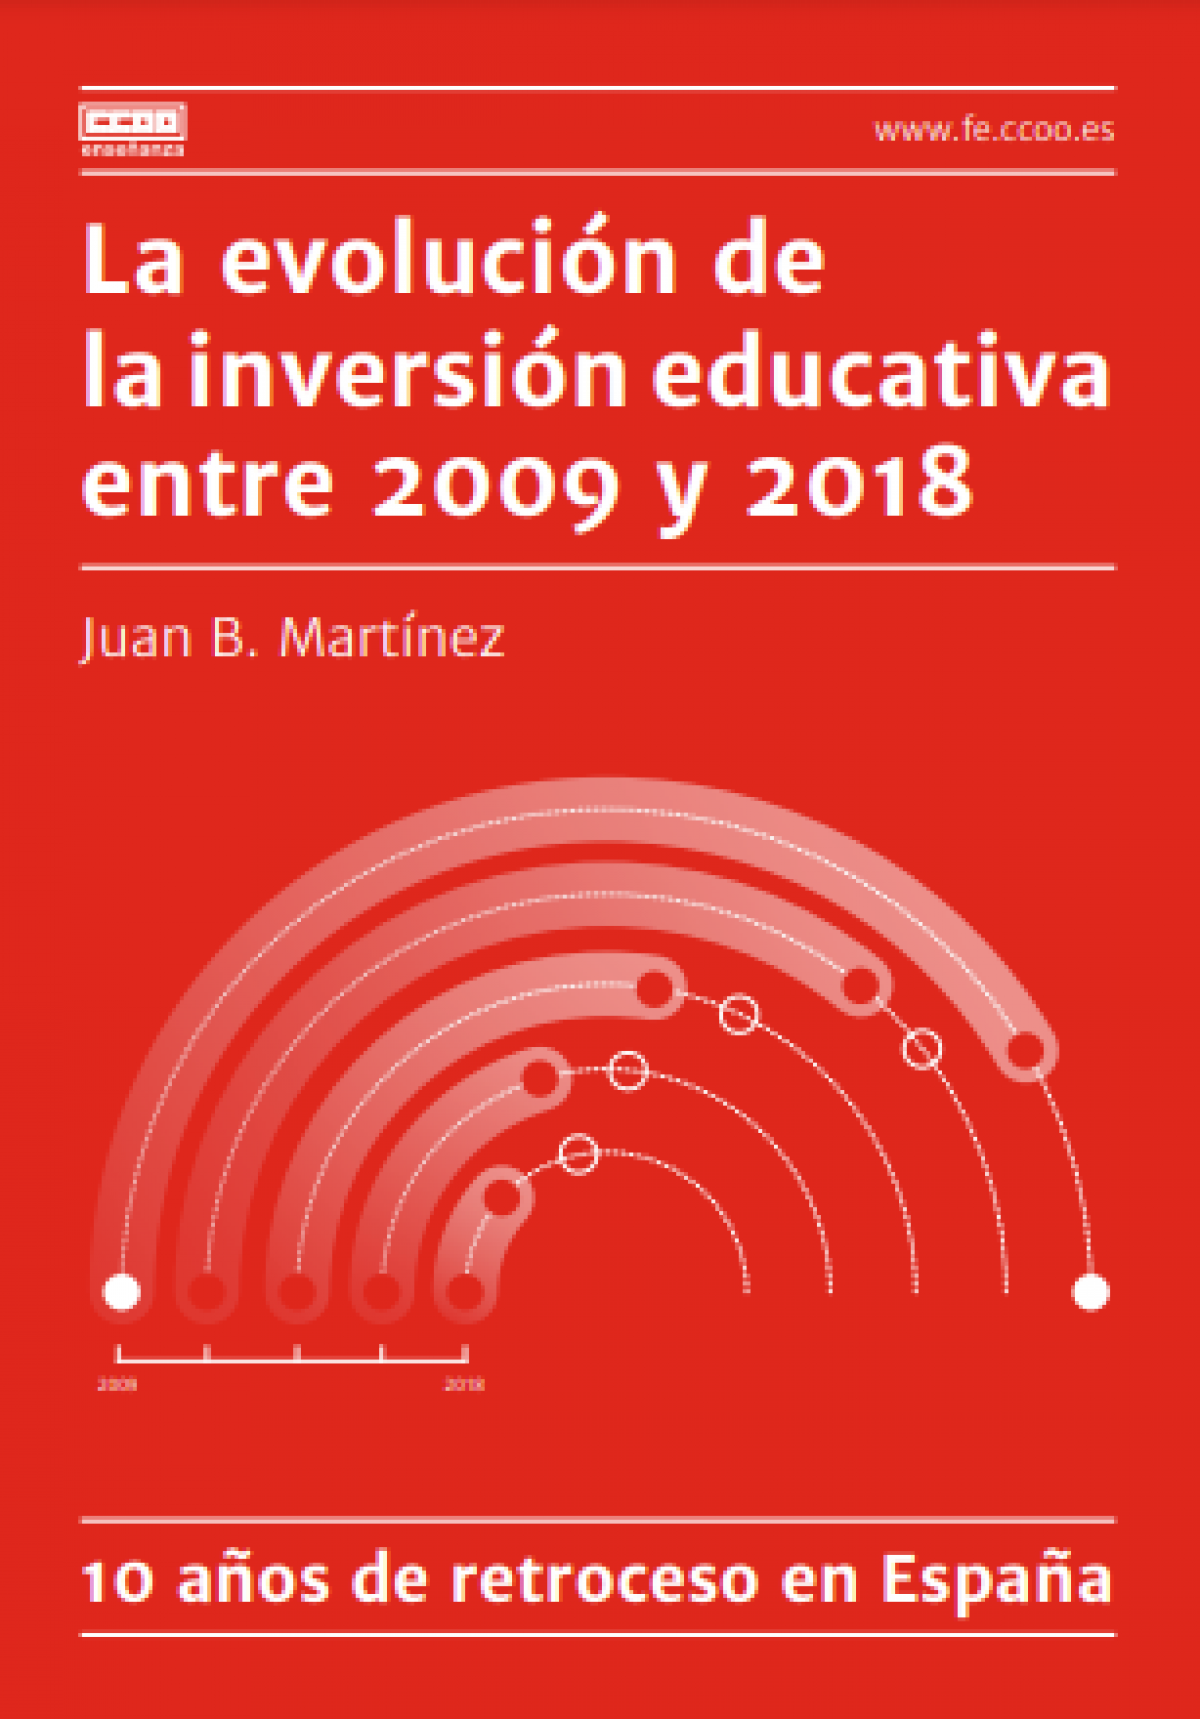 Informe "La evolución de la inversión educativa entre 2009 y 2018"